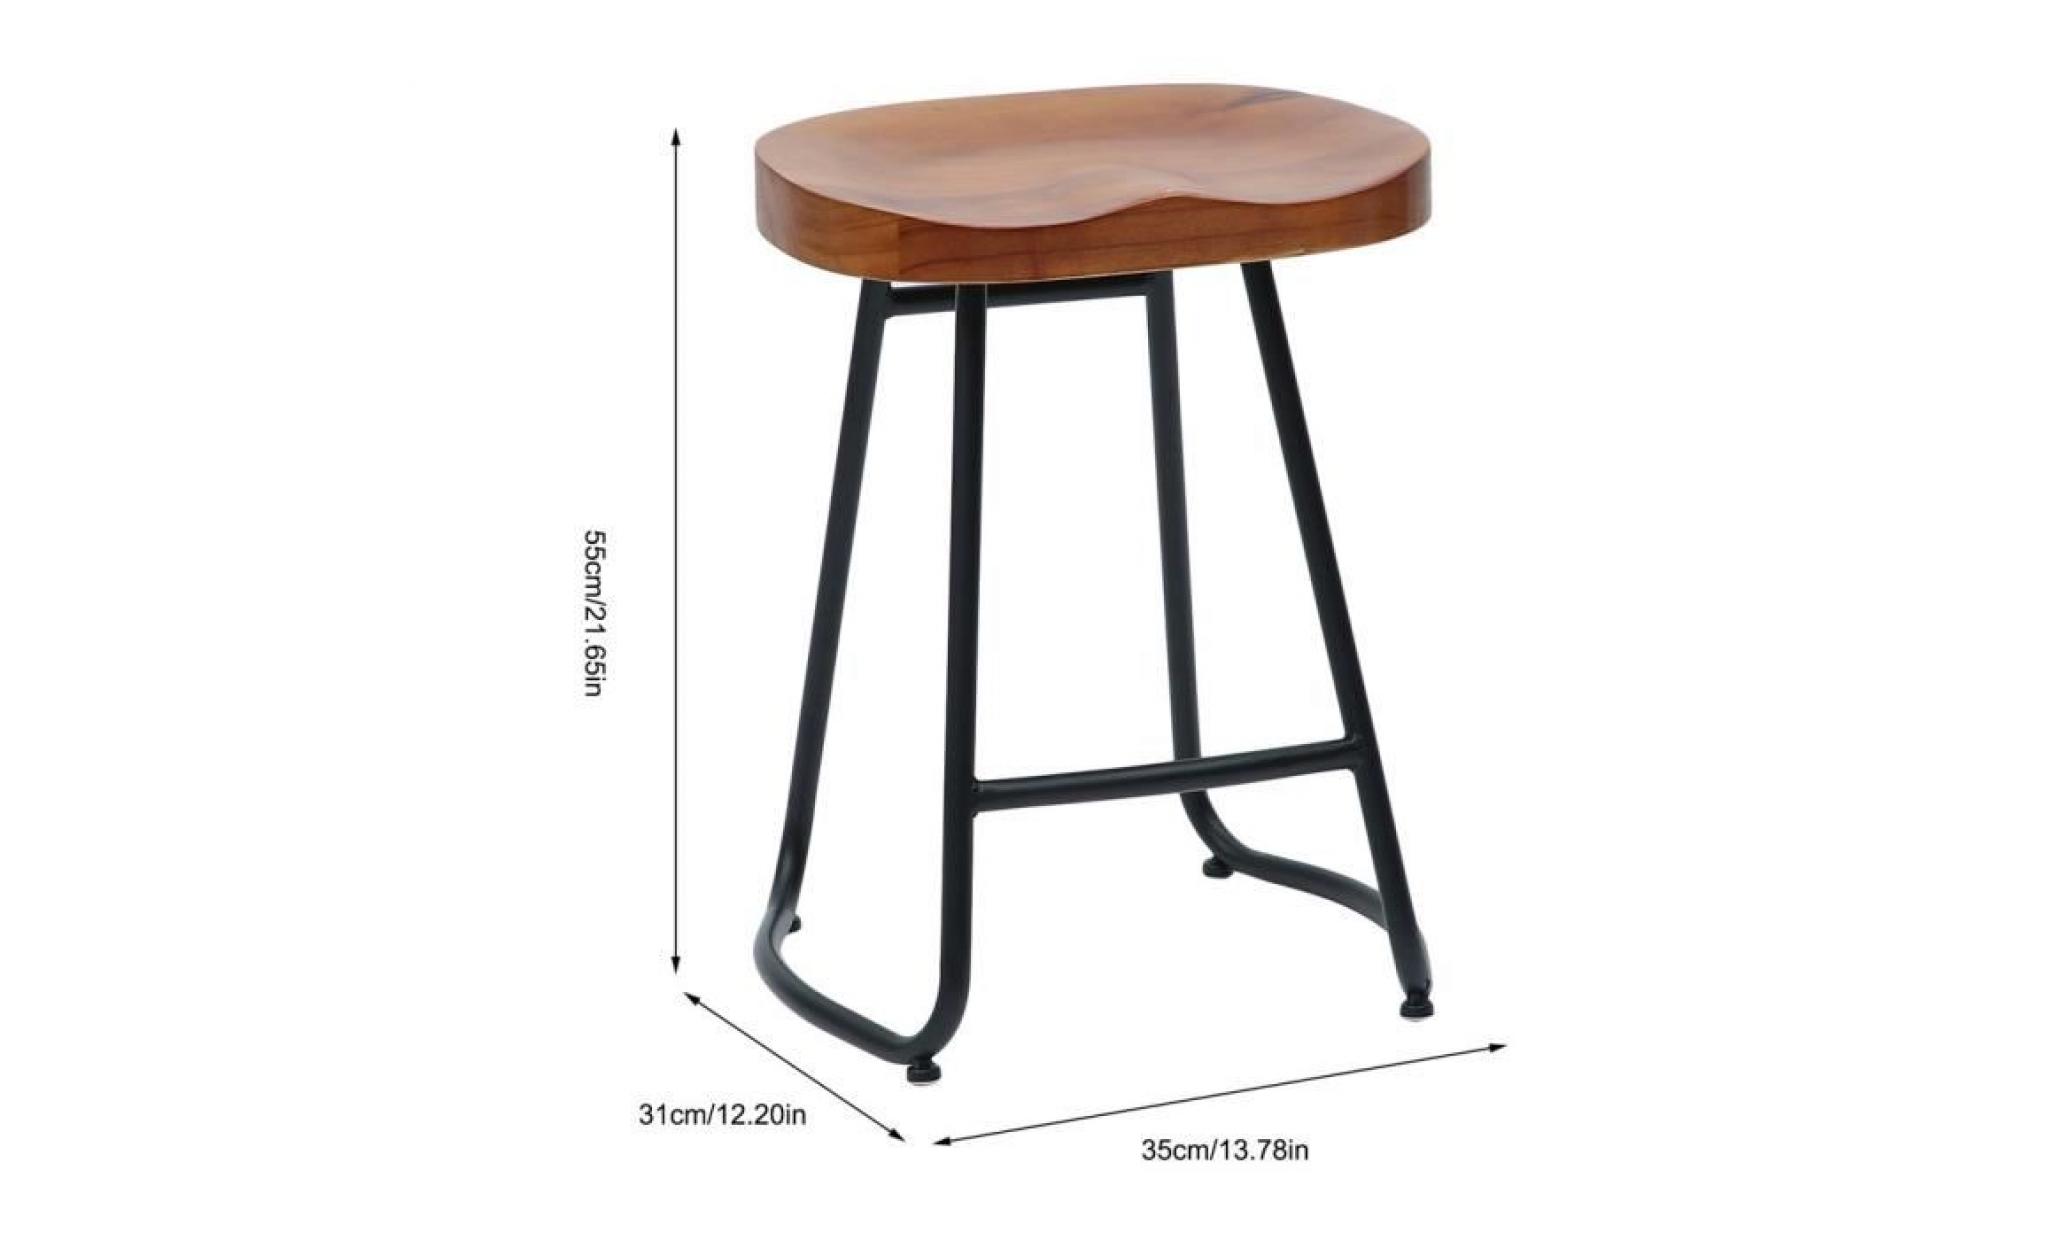 1pc tabouret de bar en bois style vintage rustique industriel capacité charge 100kg chaise à manger 35*31*55cm pas cher